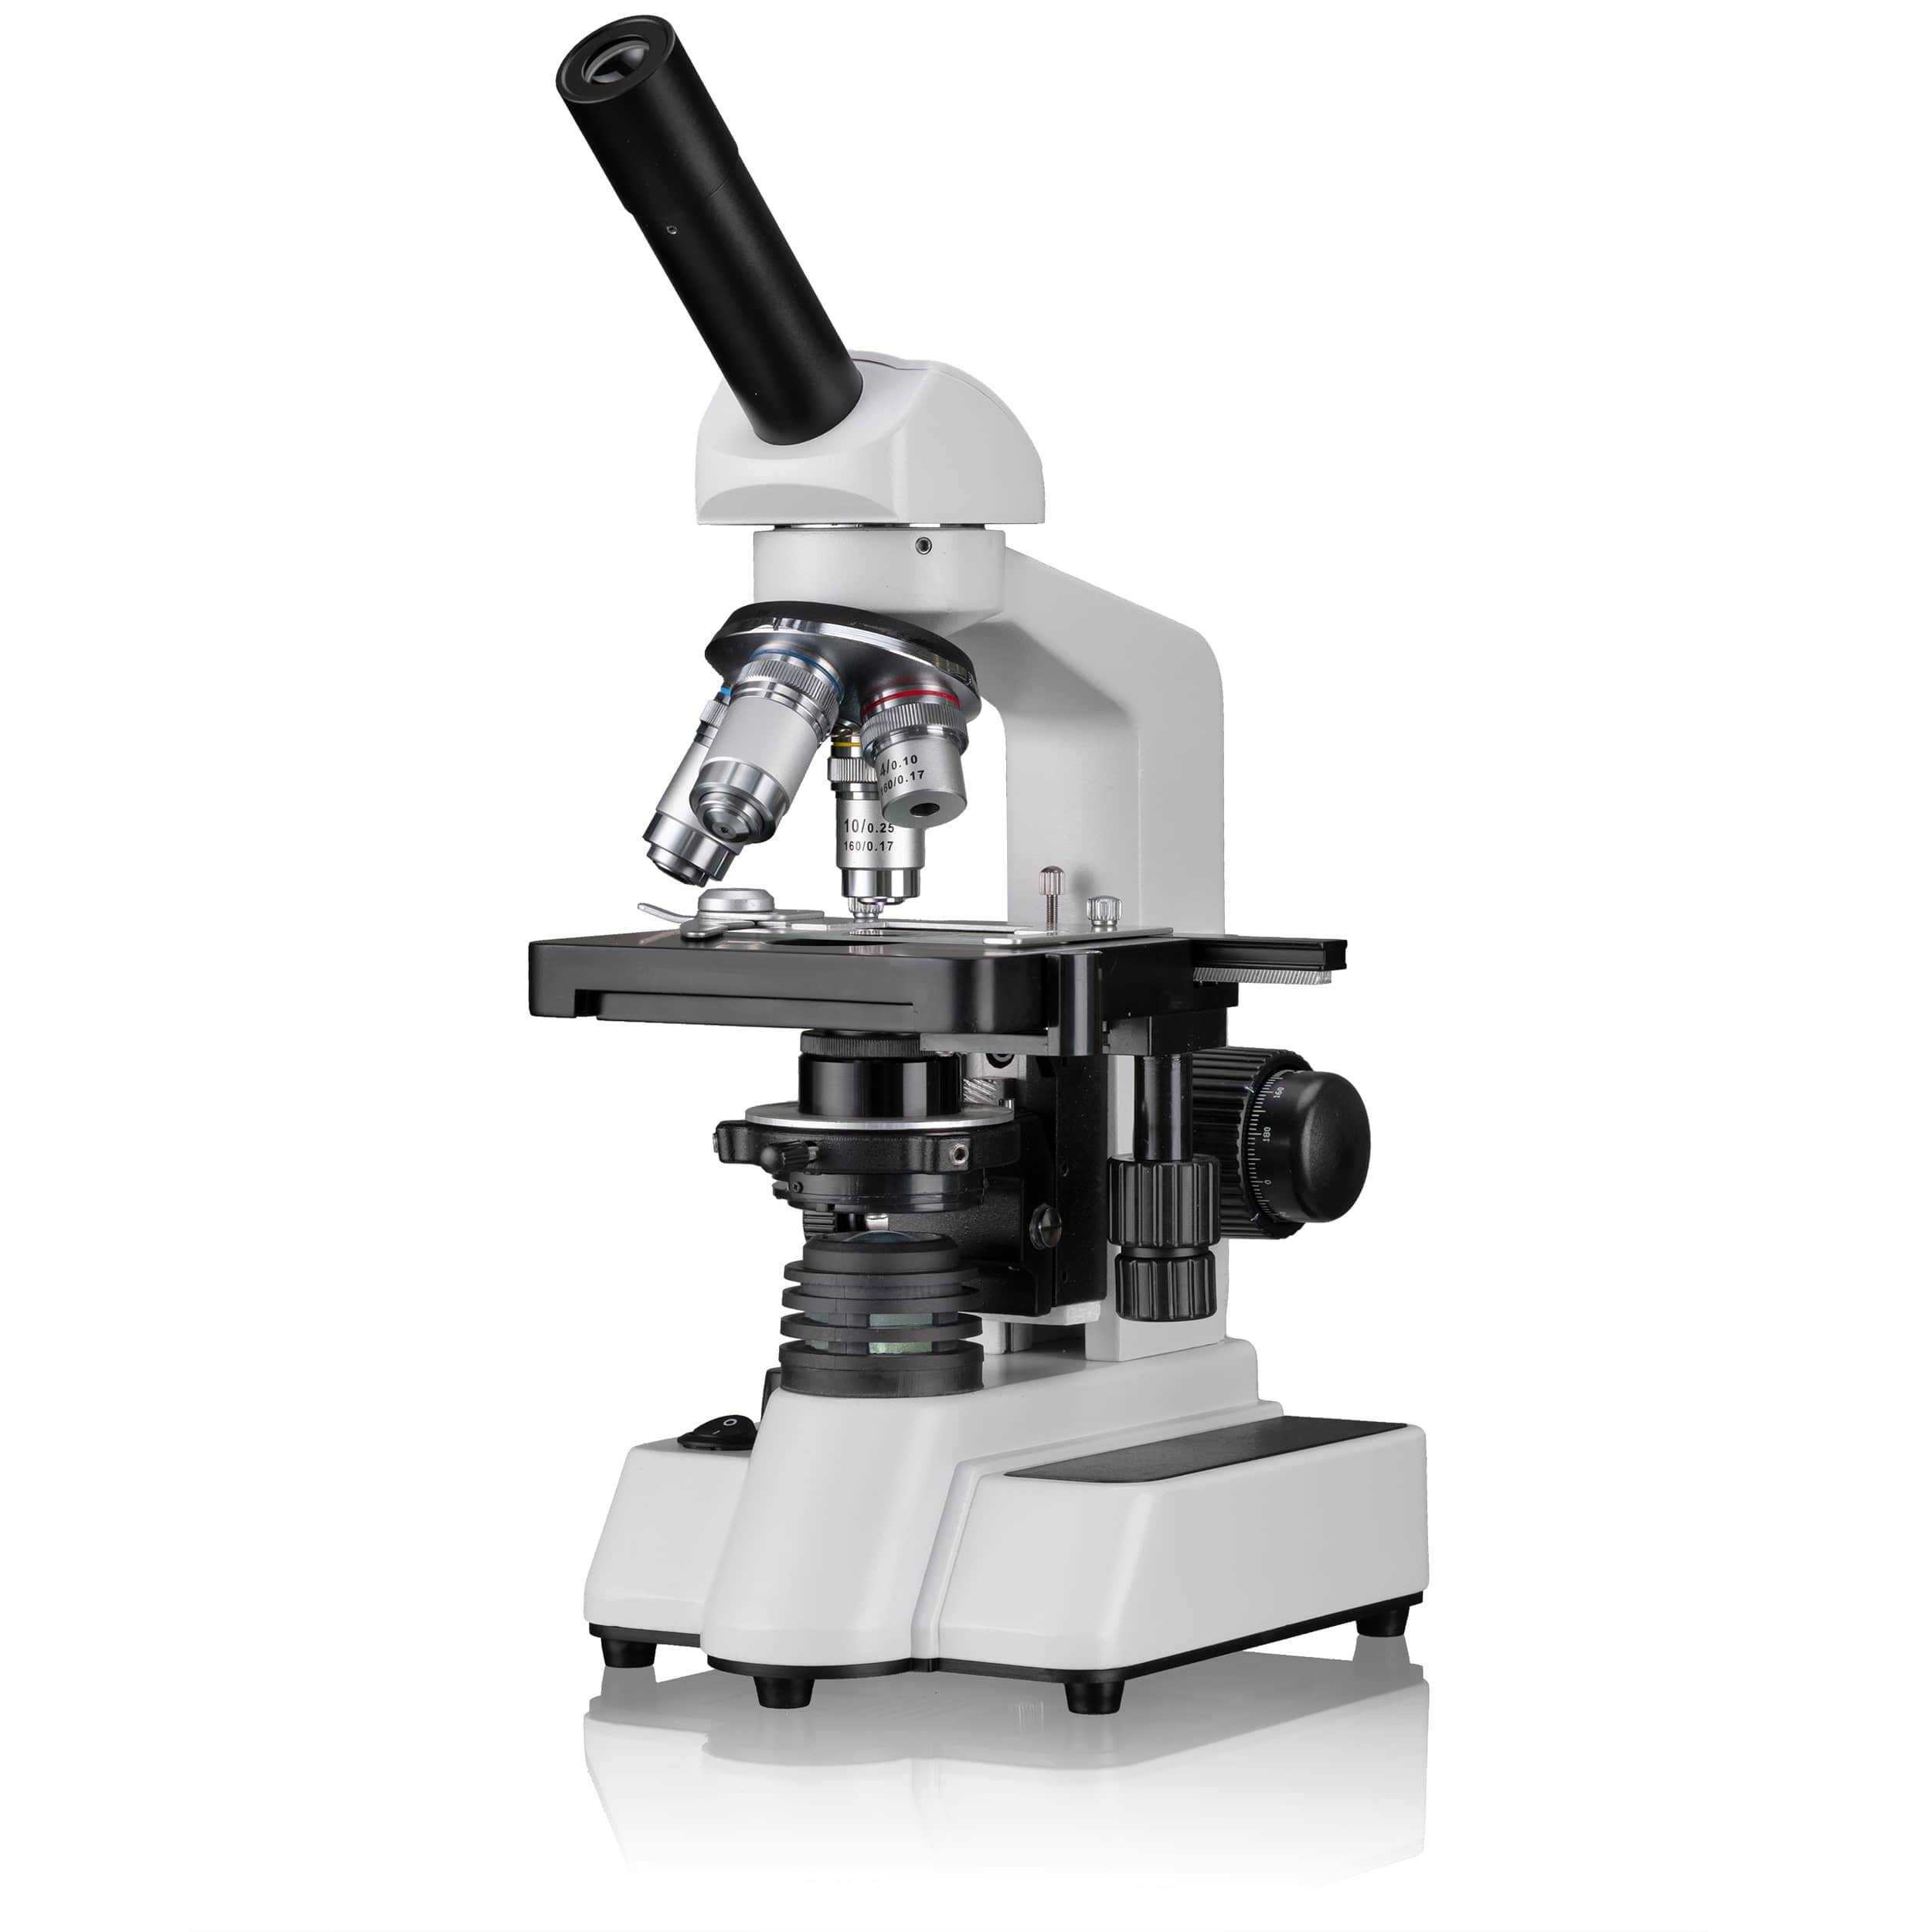  Il BRESSER Erudit DLX è un ottimo microscopio per la scuola e l'università. Grazie agli obiettivi DIN offre immagini di ottima qualità. 